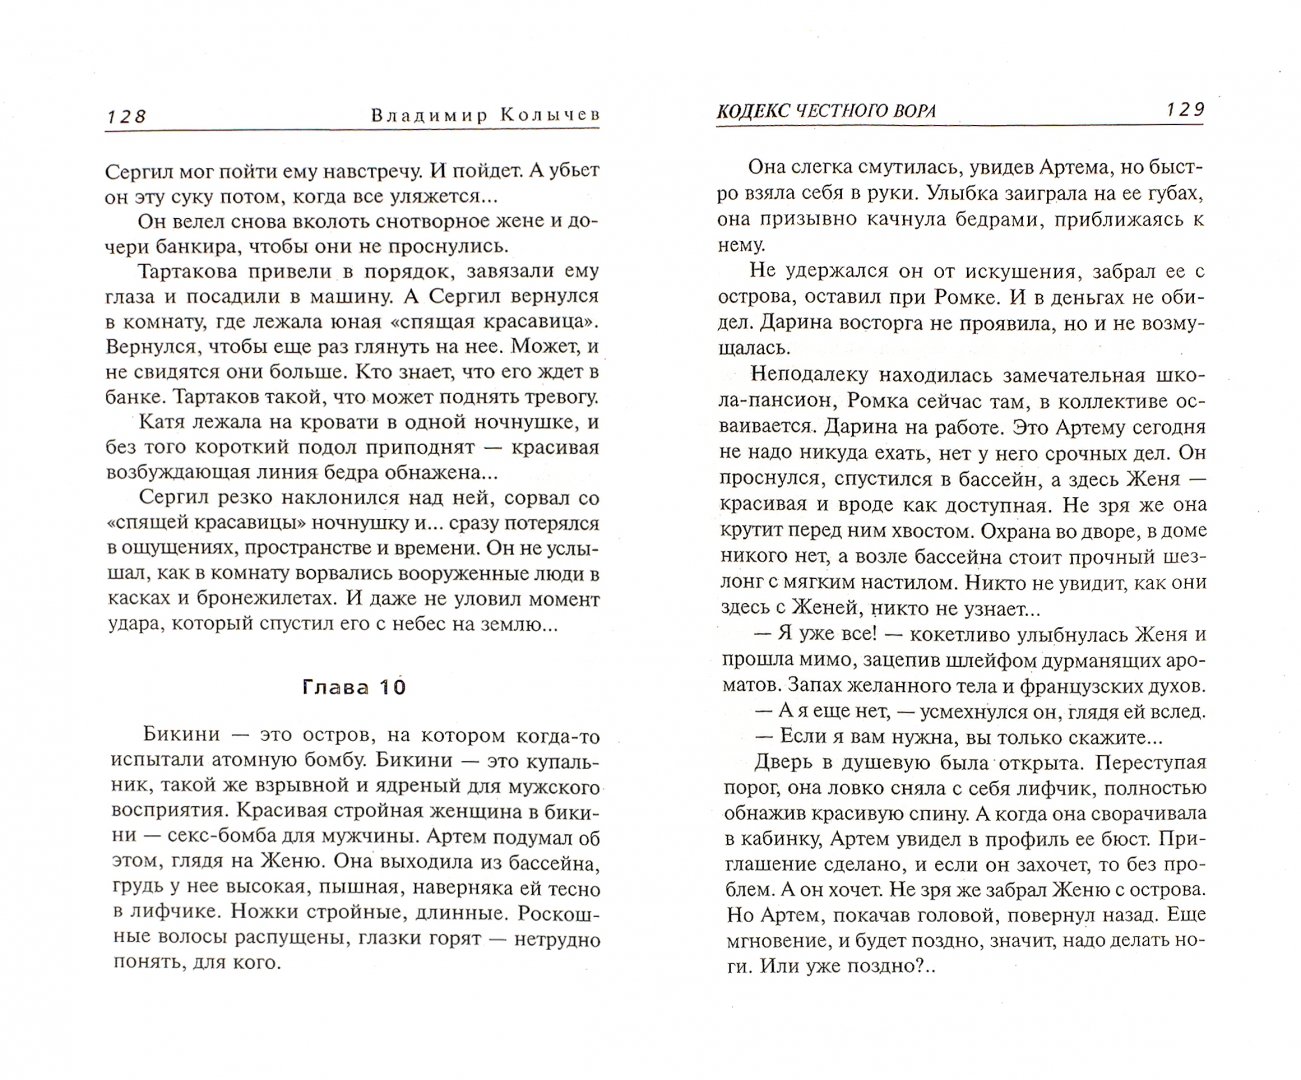 Иллюстрация 1 из 7 для Кодекс честного вора - Владимир Колычев | Лабиринт - книги. Источник: Лабиринт